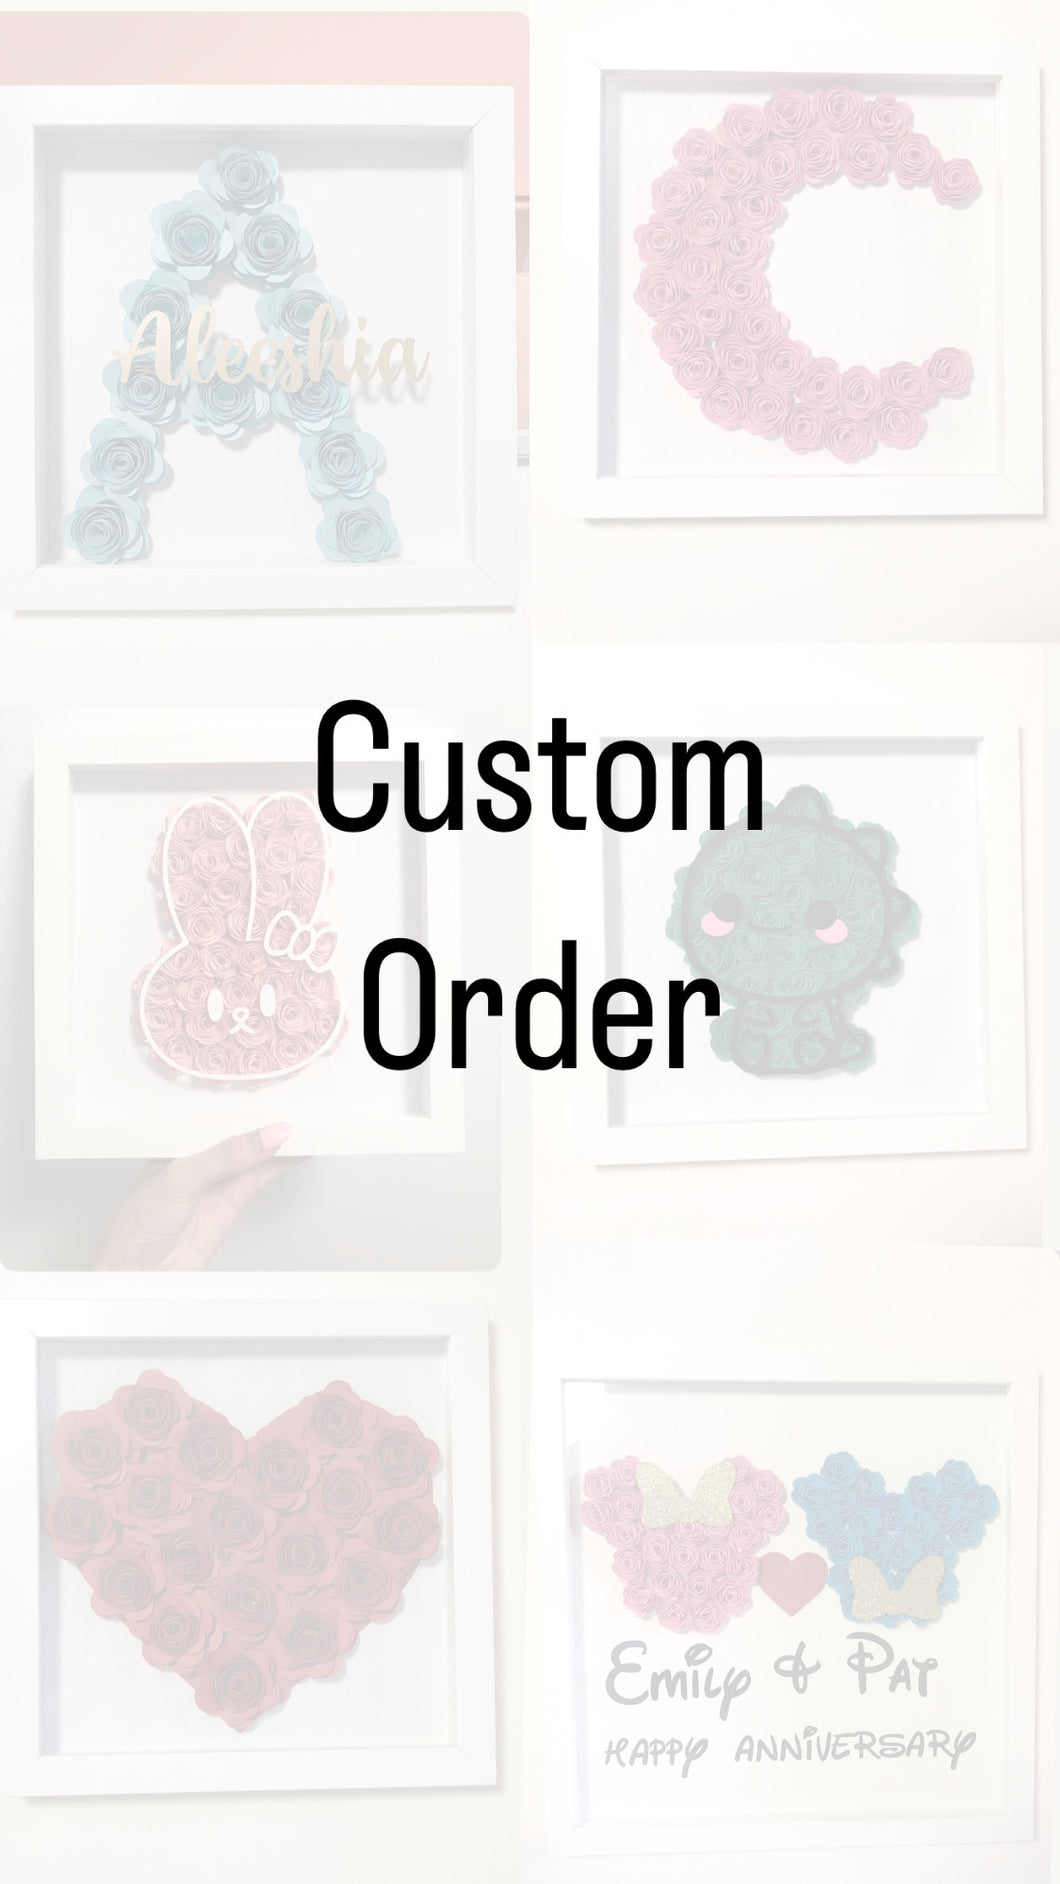 Custom Flower Box